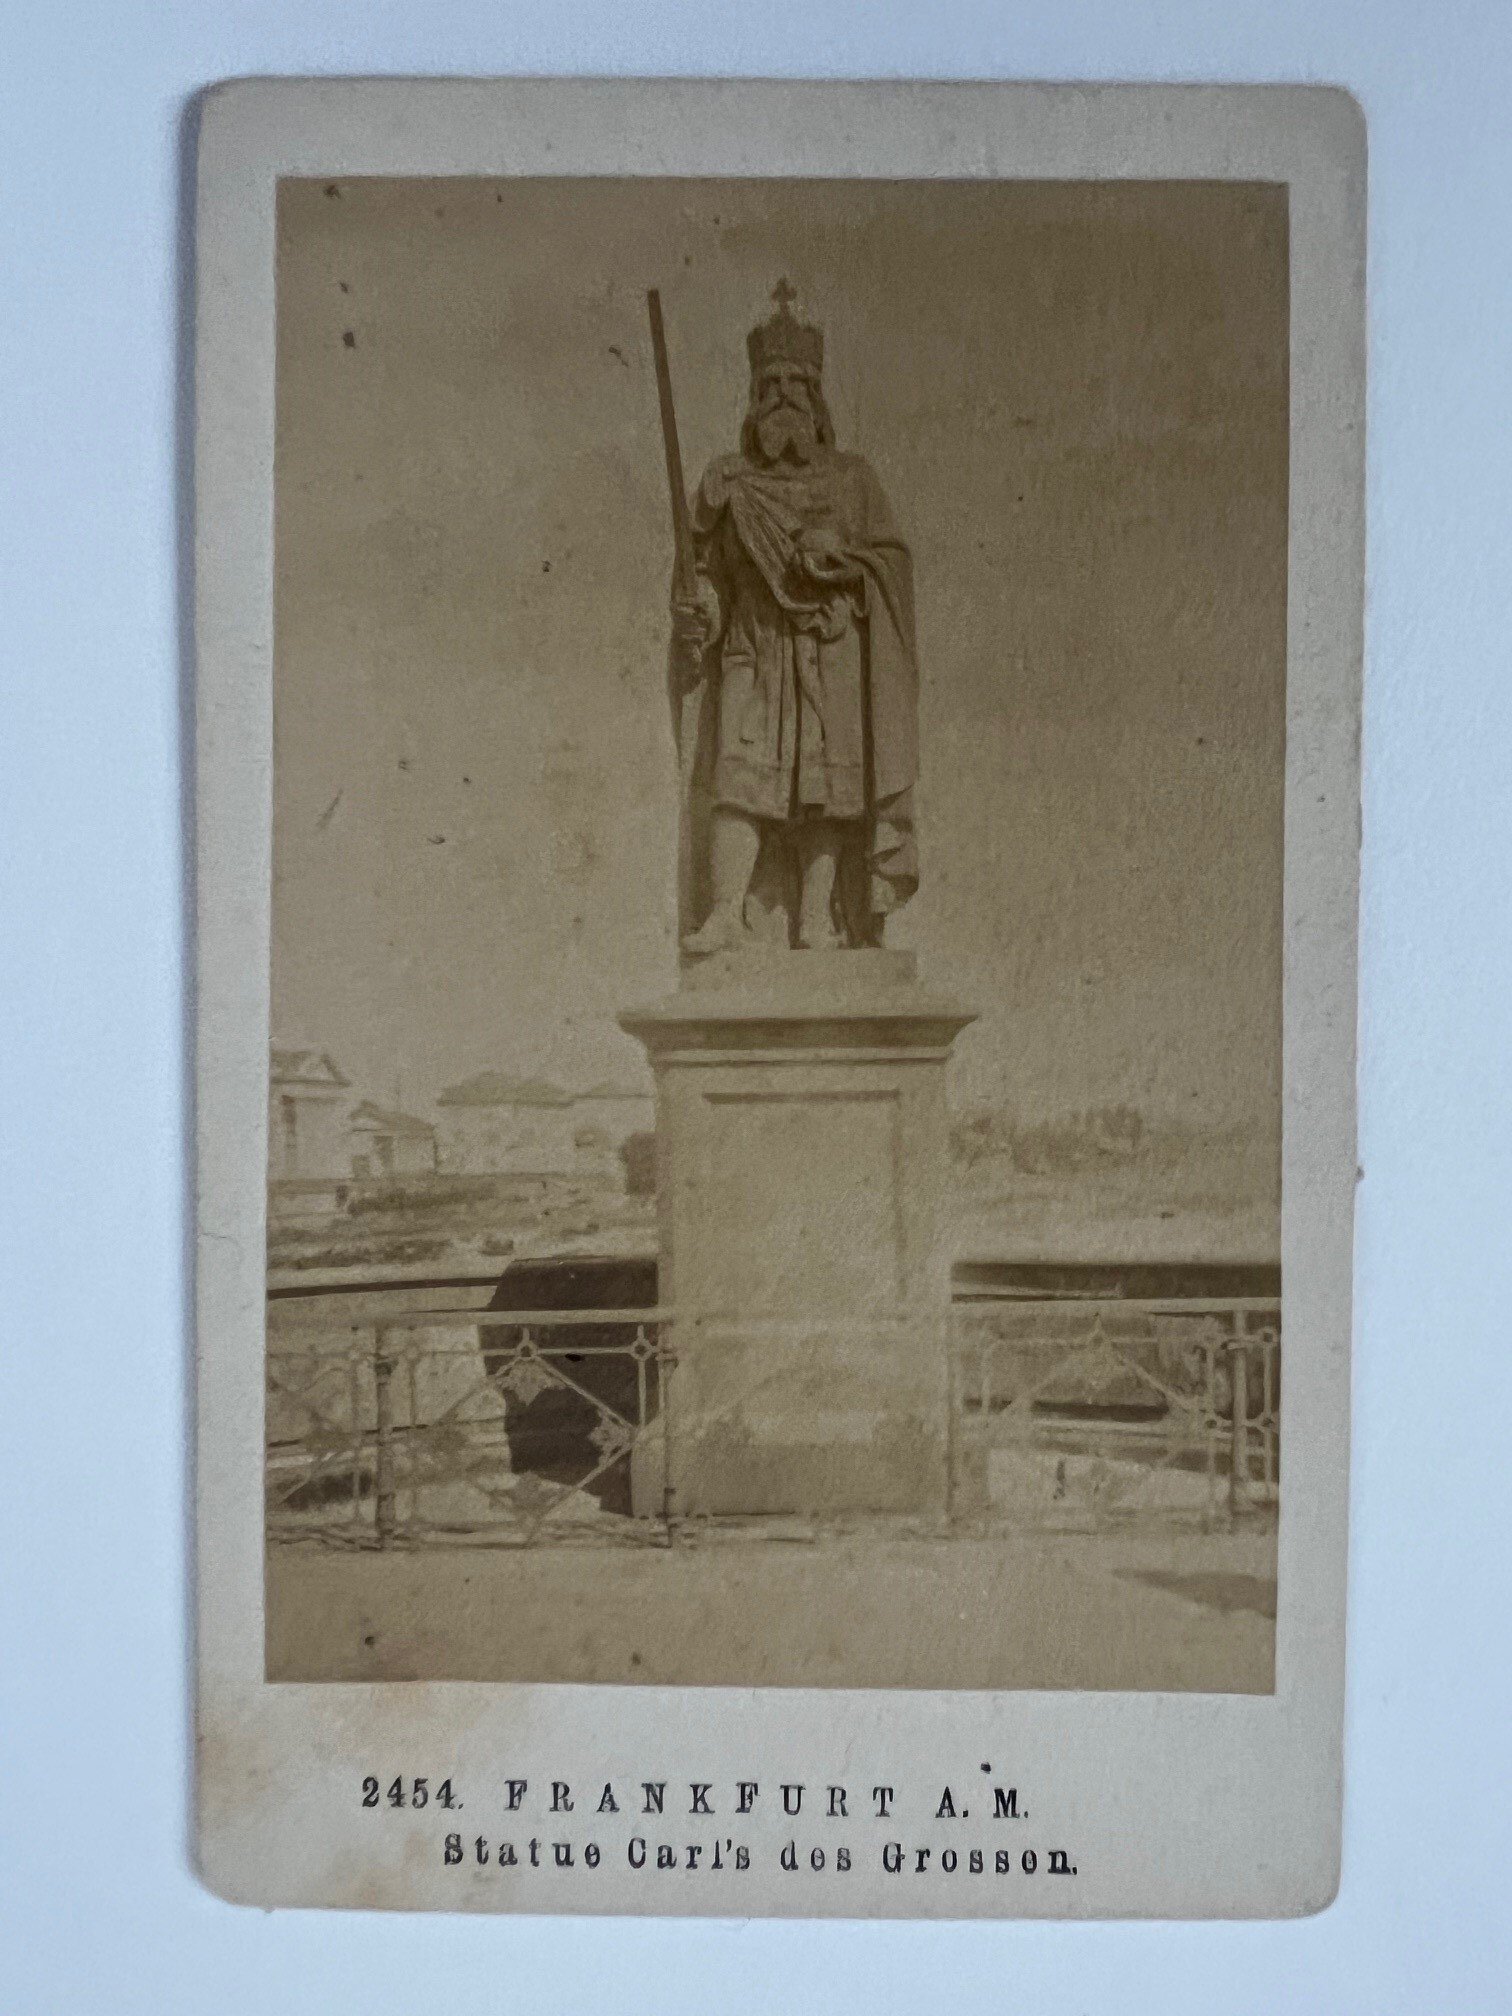 CdV, Unbekannter Fotograf, Frankfurt, Statue Carl´s des Grossen, ca. 1876. (Taunus-Rhein-Main - Regionalgeschichtliche Sammlung Dr. Stefan Naas CC BY-NC-SA)